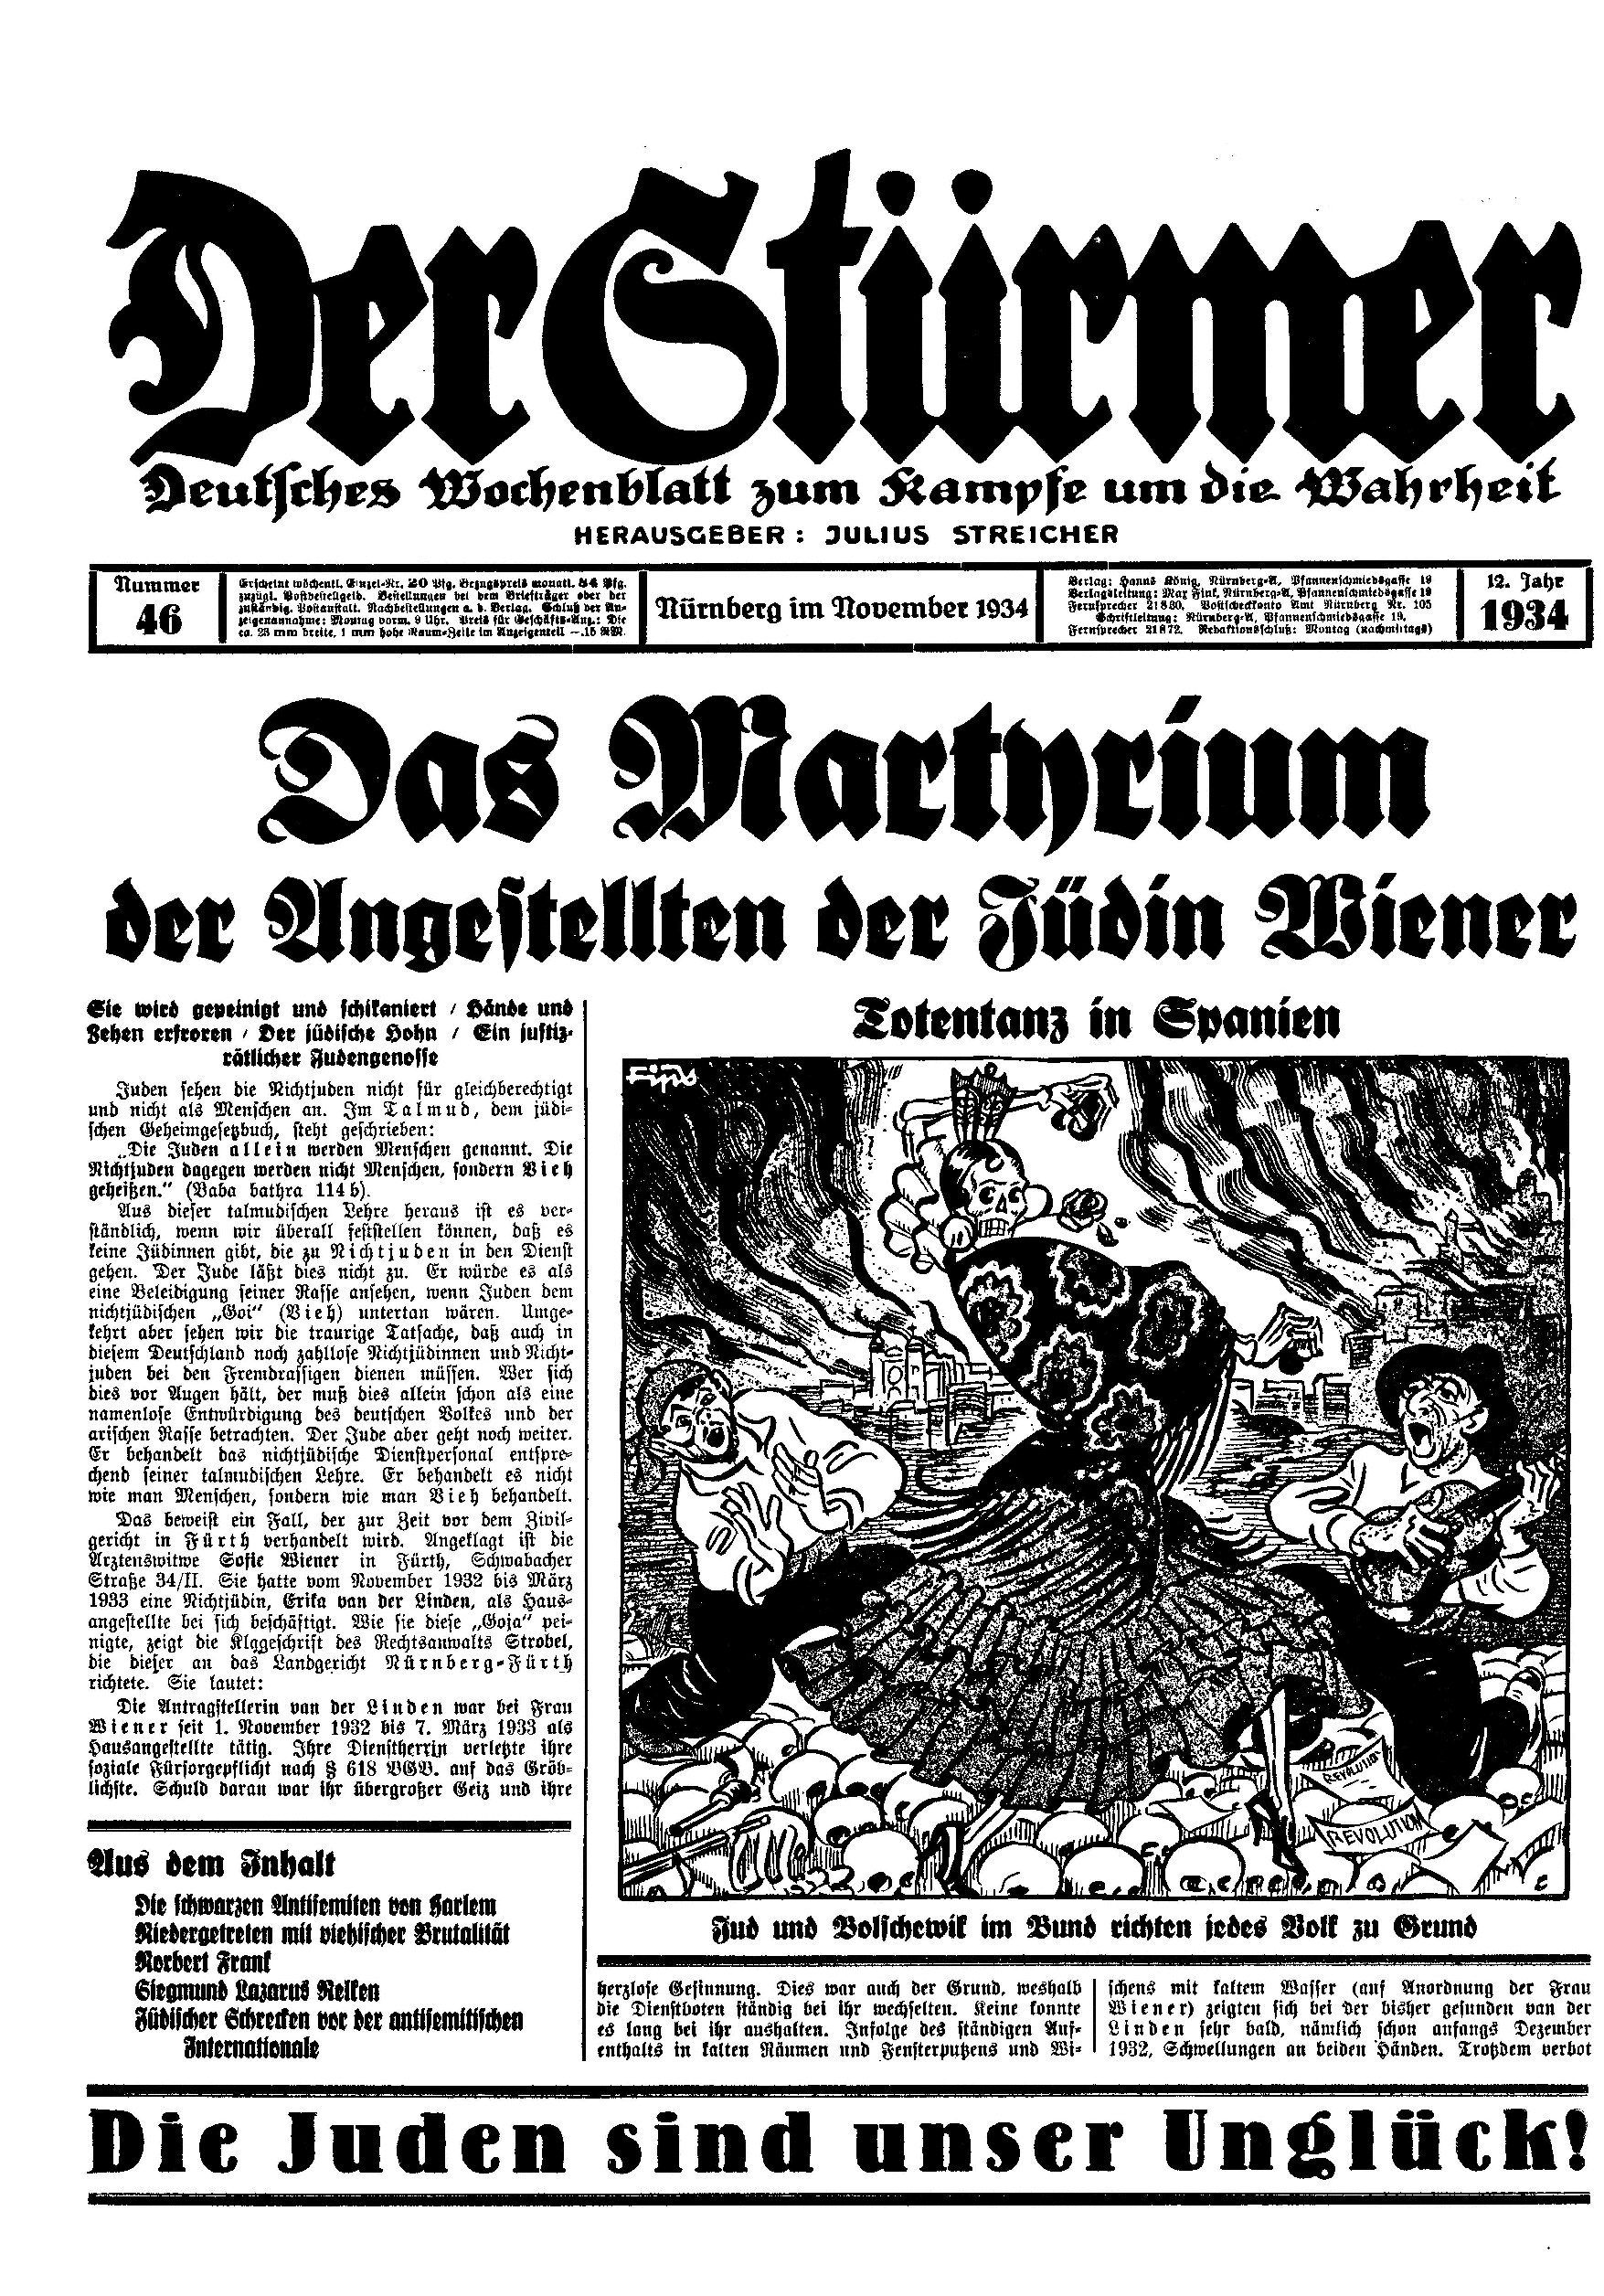 Der Stürmer - 1934 Nr. 46 (10 S., Scan, Fraktur)